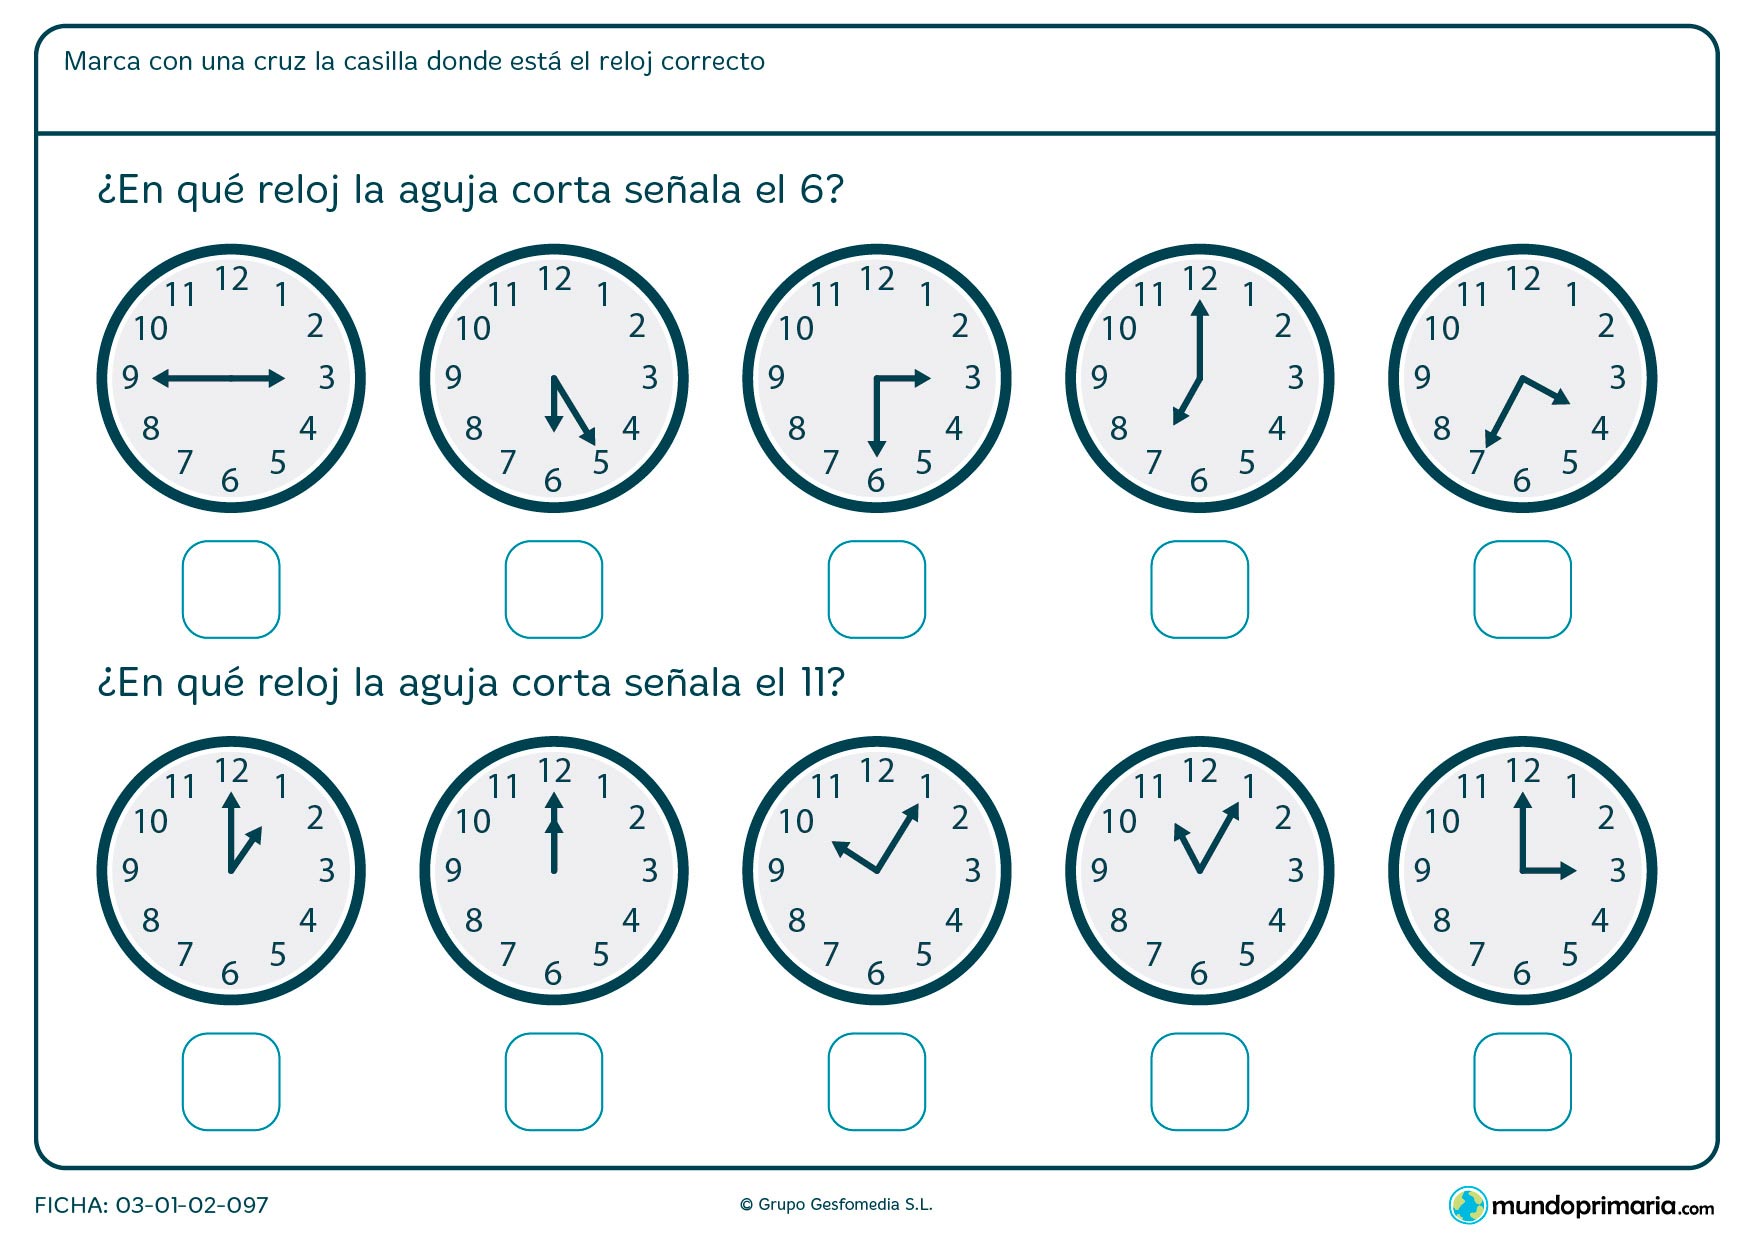 Ficha de qué marca la aguja del reloj para decir en qué reloj son las 6 en punto y en cuál las 11 en punto.